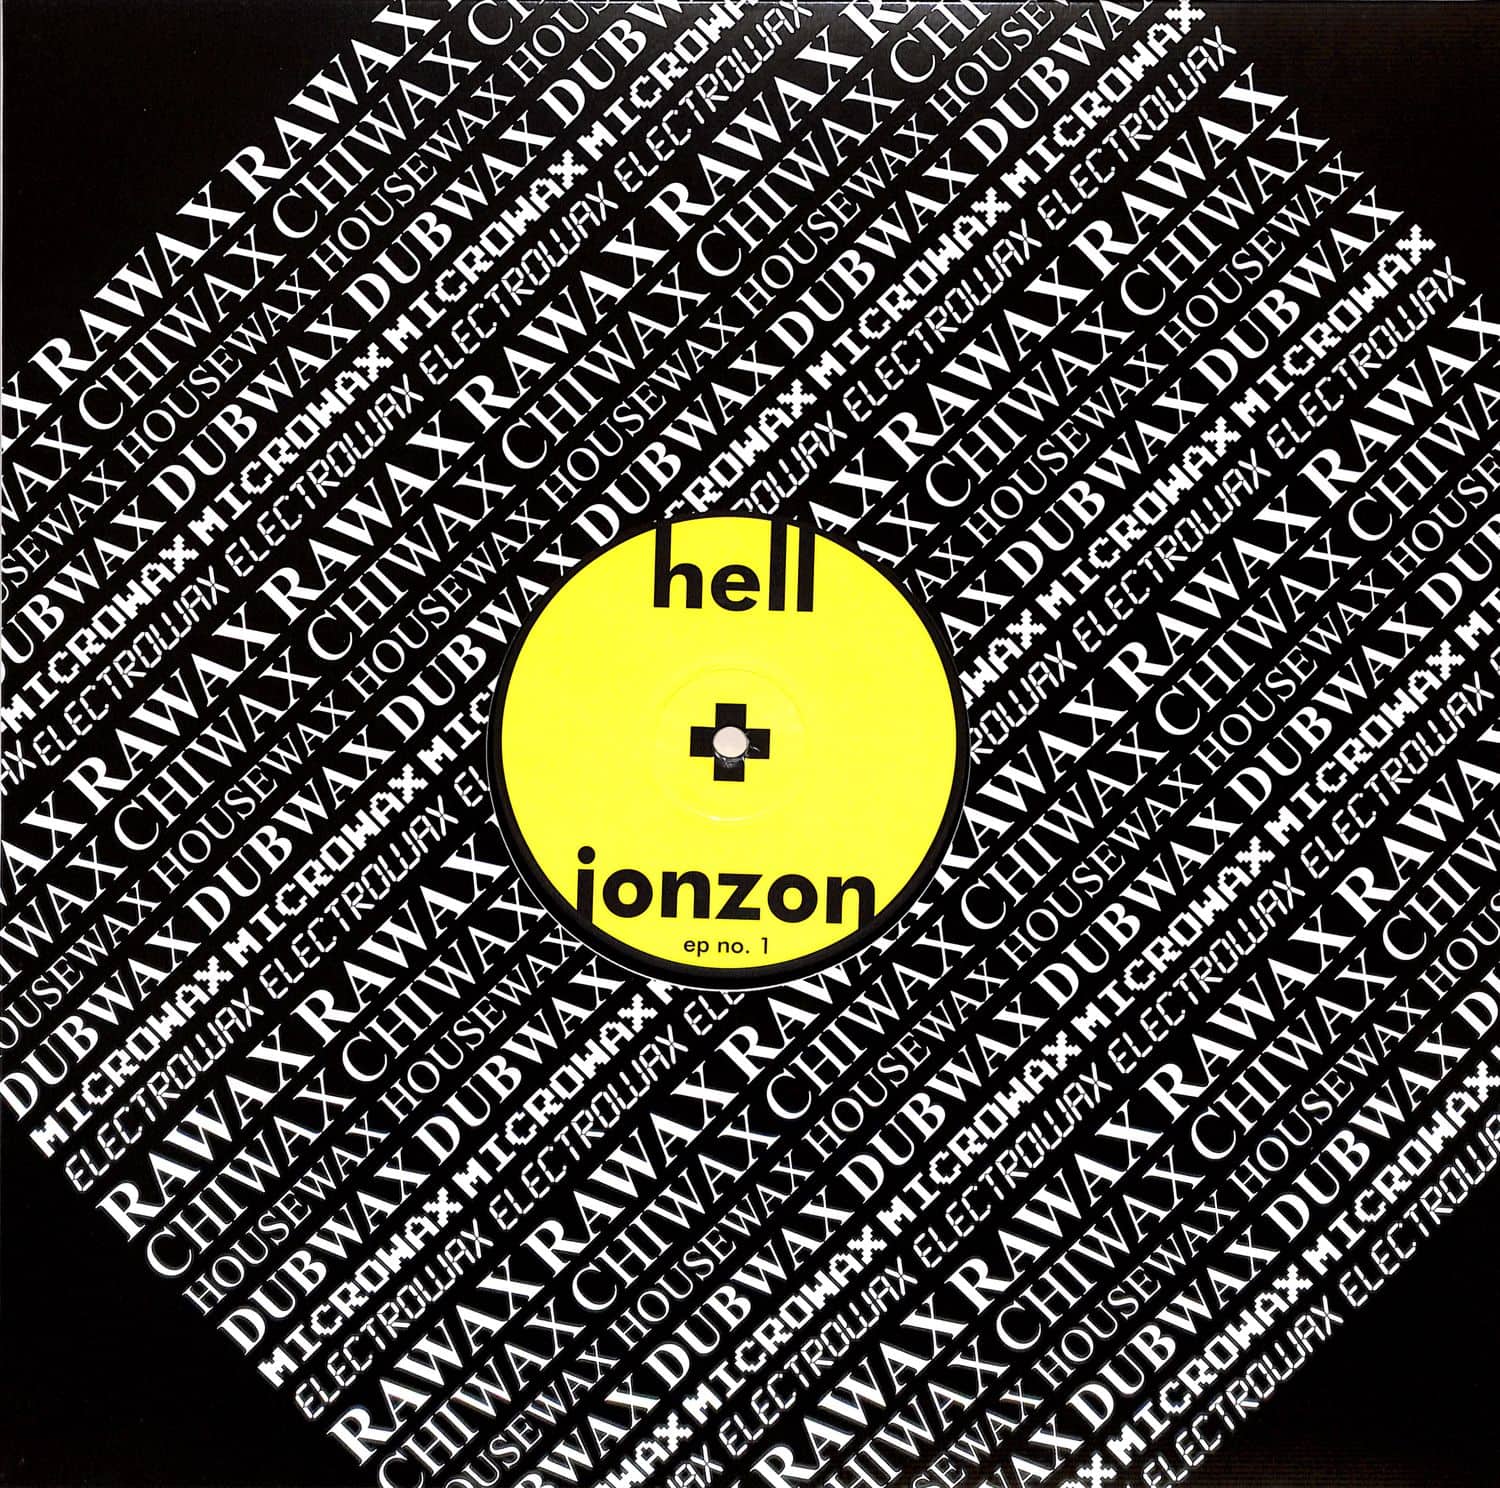 Hell + Jonzon - EP NO. 1